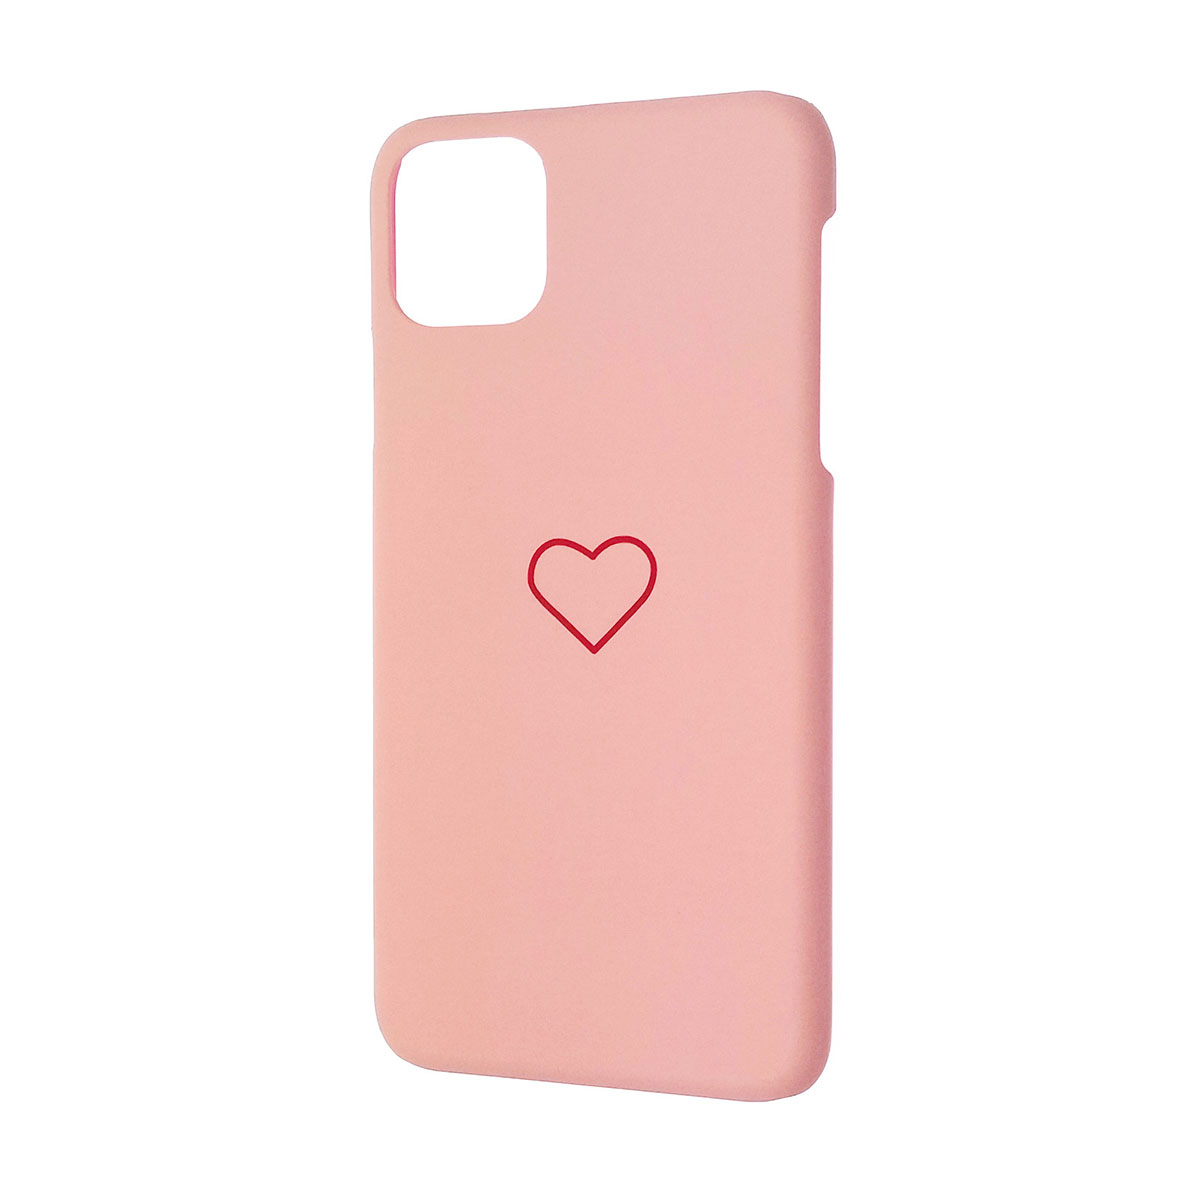 Чехол накладка для APPLE iPhone 11 Pro MAX, пластик, матовый, рисунок Сердце, цвет розовый.